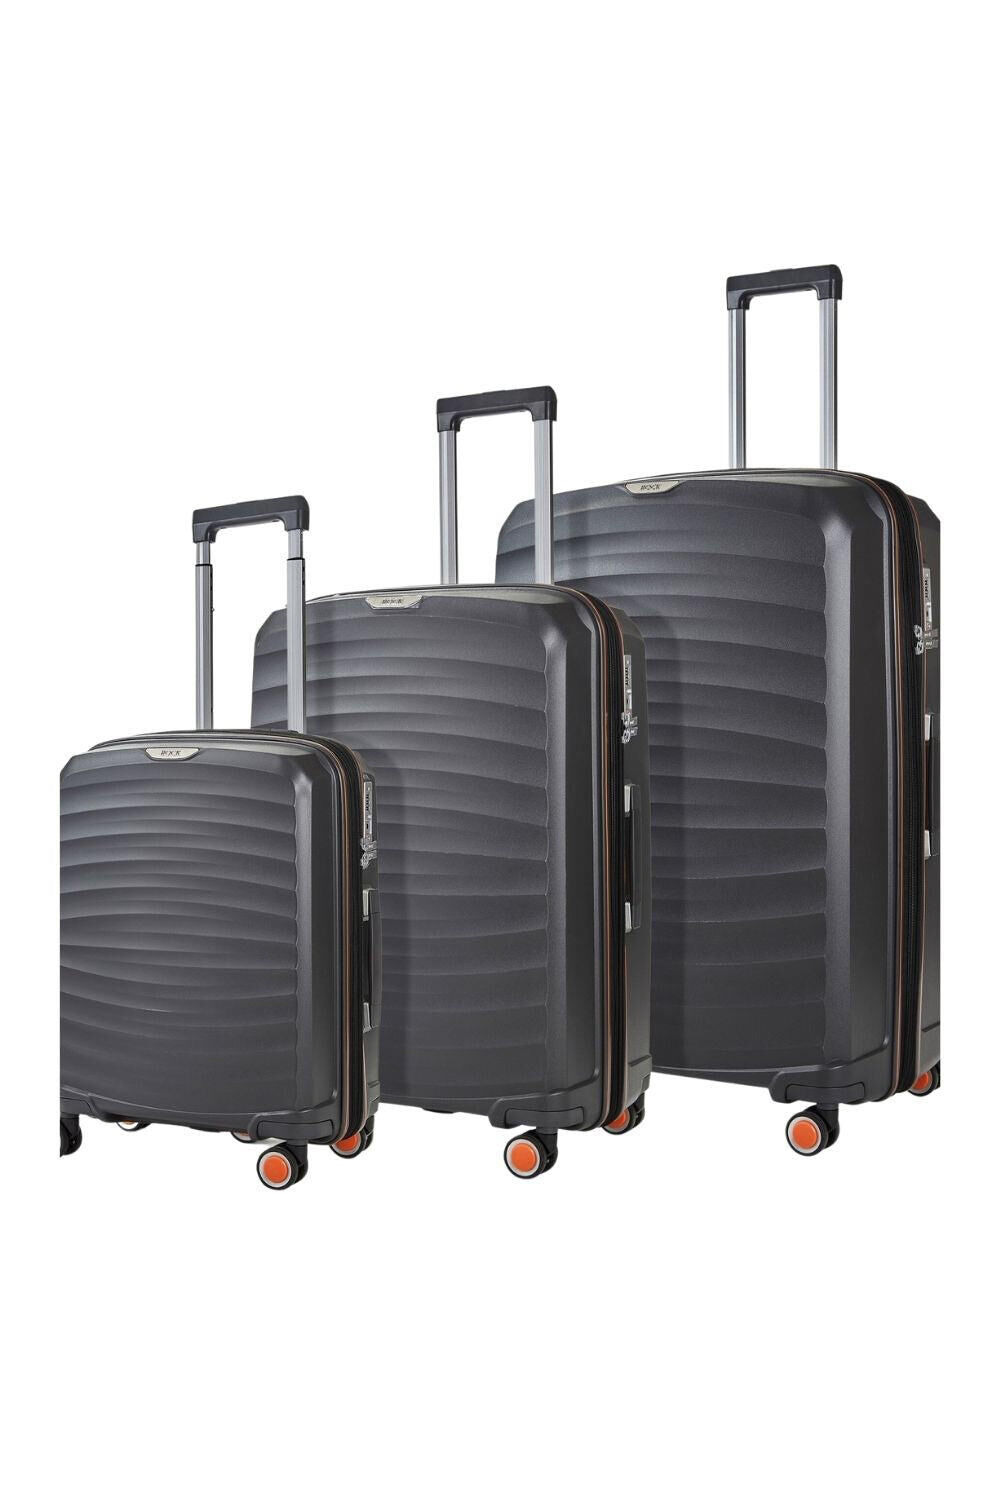 ROCK Sunwave 3 Pc Set 8 Wheel Hardshell Expandable Suitcases